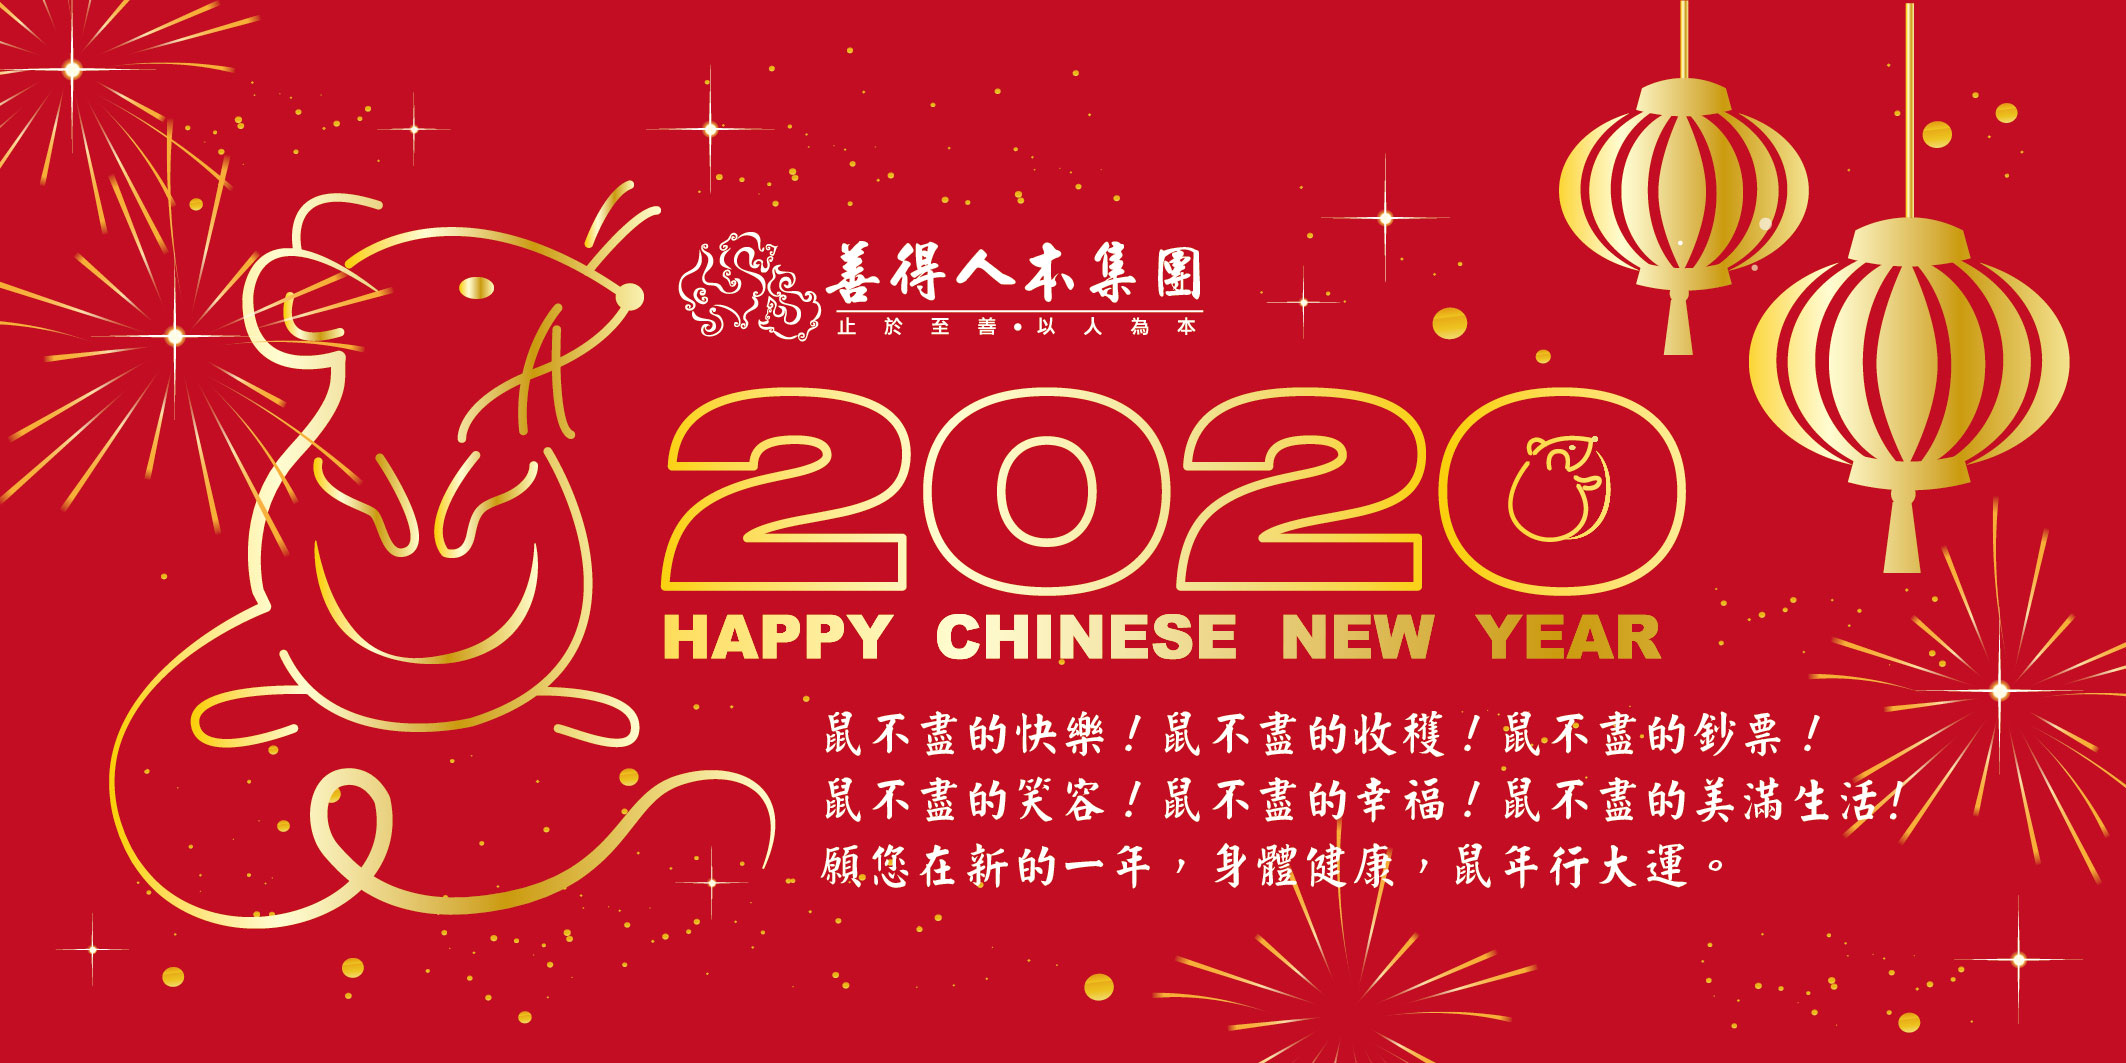 【公告】HAPPY CHINESE NEW YEAR 新年快樂